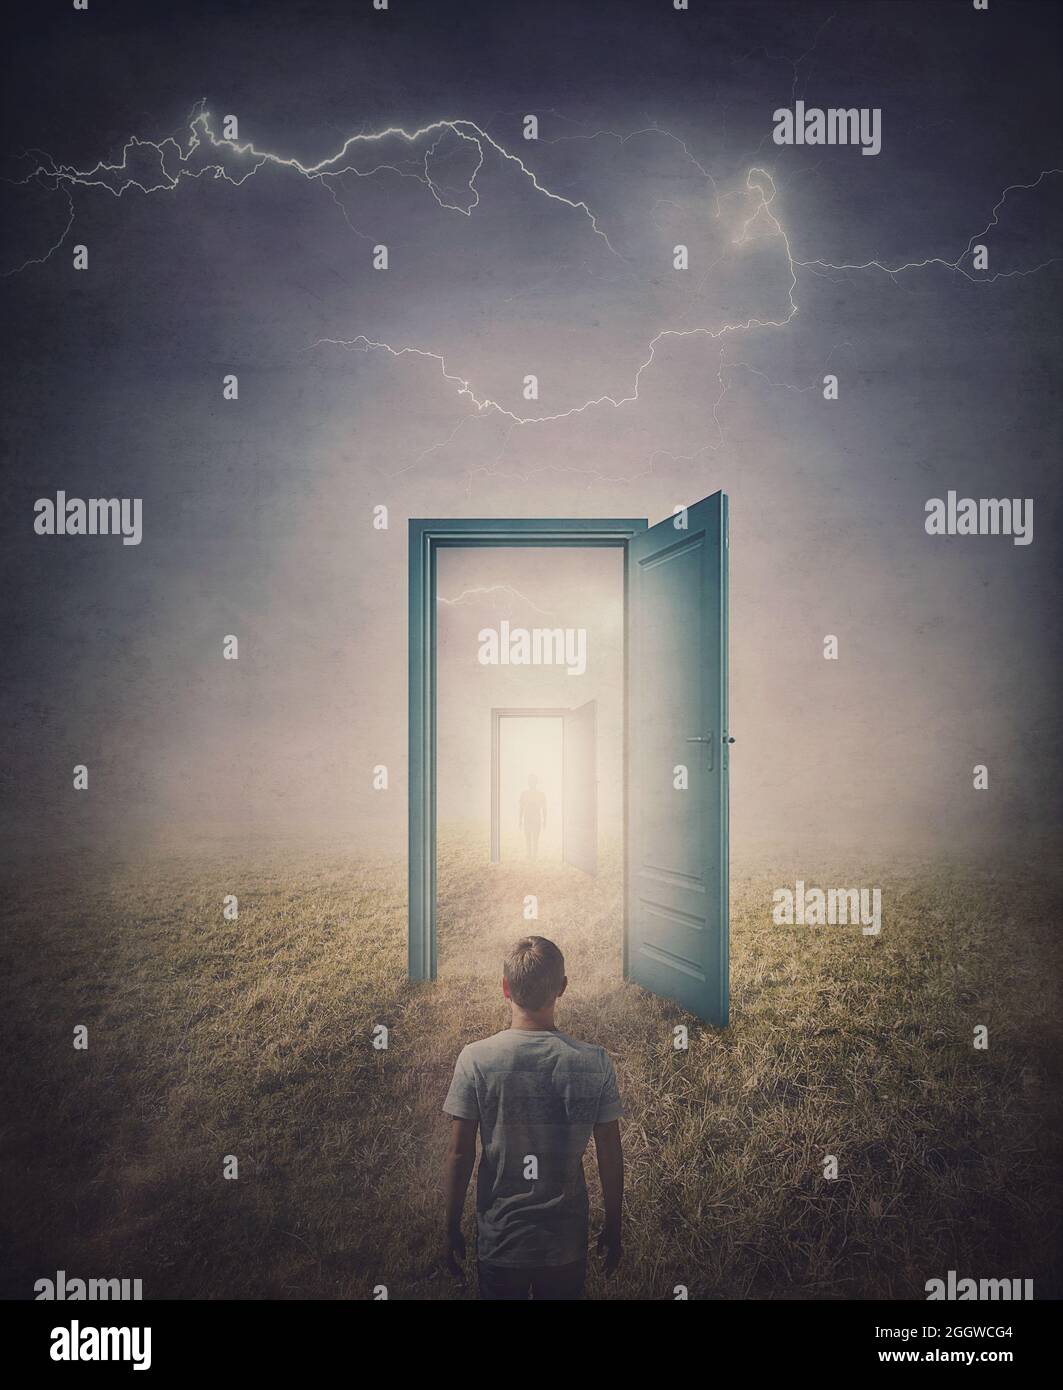 Concept de portes de téléportation. Vue arrière d'une personne debout devant une porte dans le pays, comme vu dans le miroir comme un portail vers un autre monde. M Banque D'Images